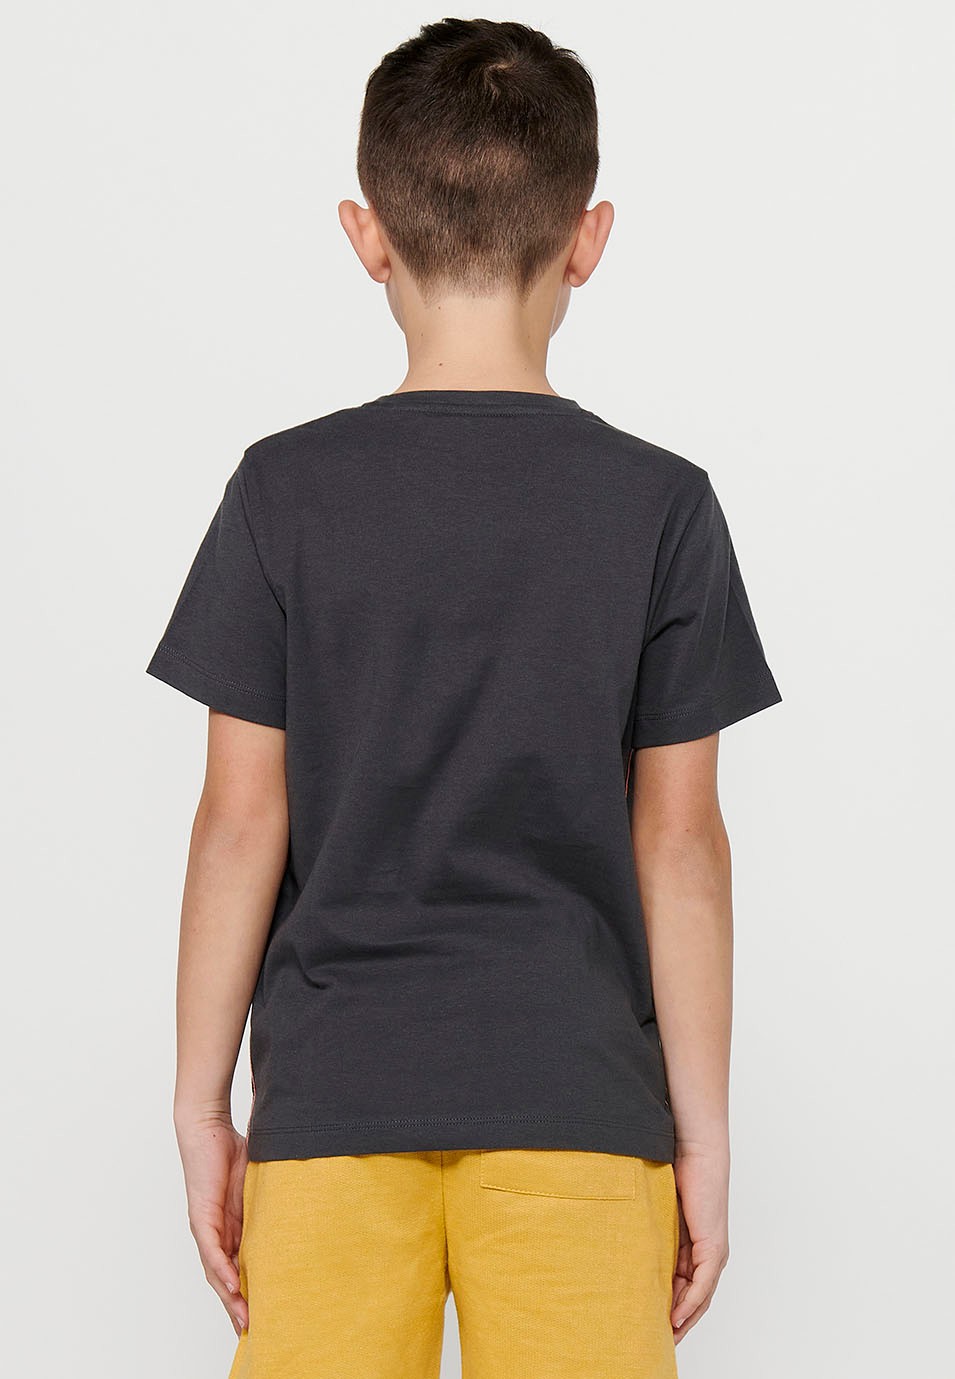 Samarreta de màniga curta de Cotó i coll rodó amb Estampat davanter de Color Gris Fosc per a Nen 5